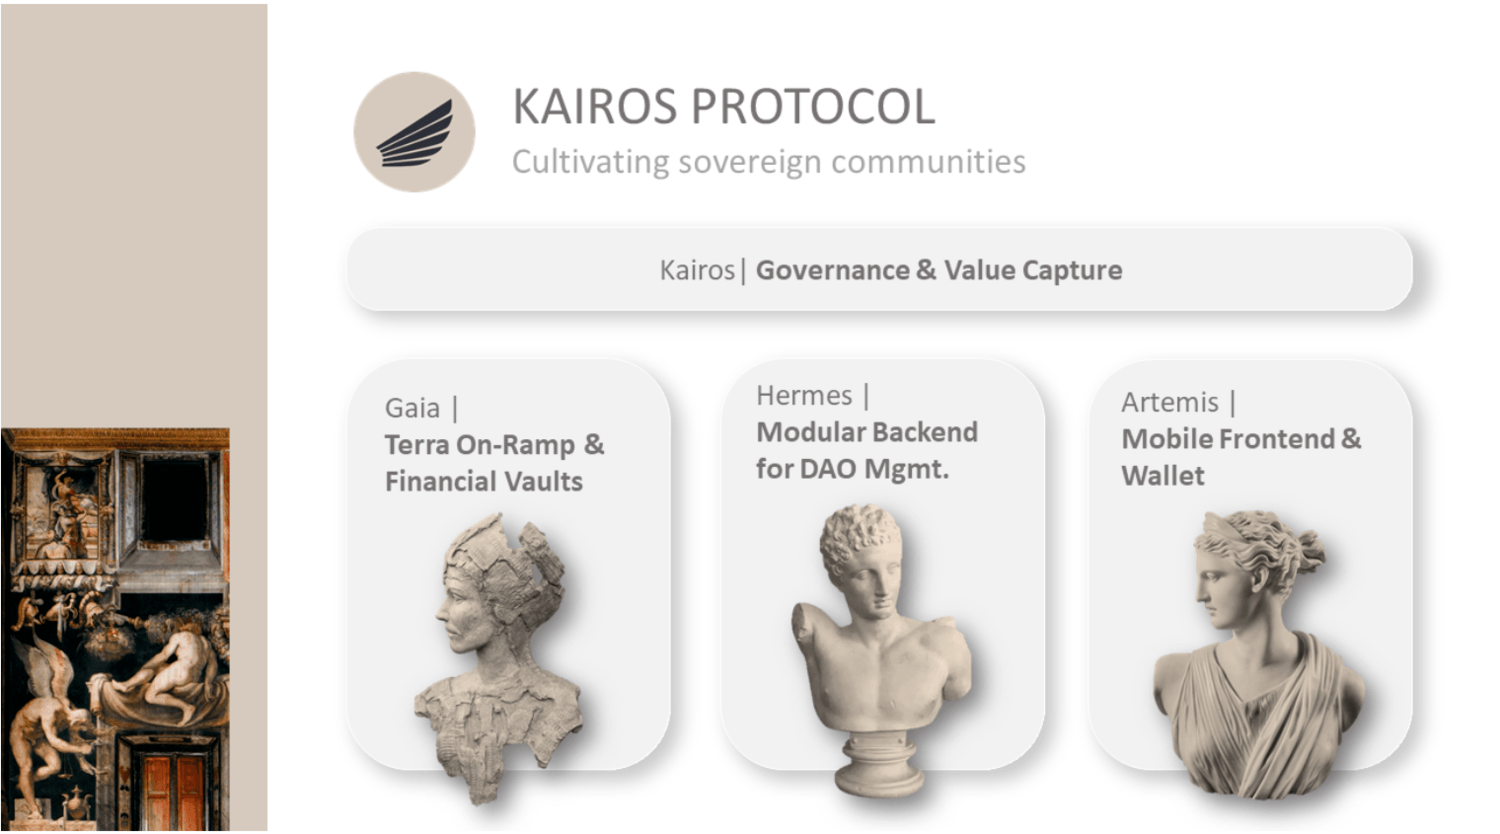 Điểm nổi bật của Kairos Protocol